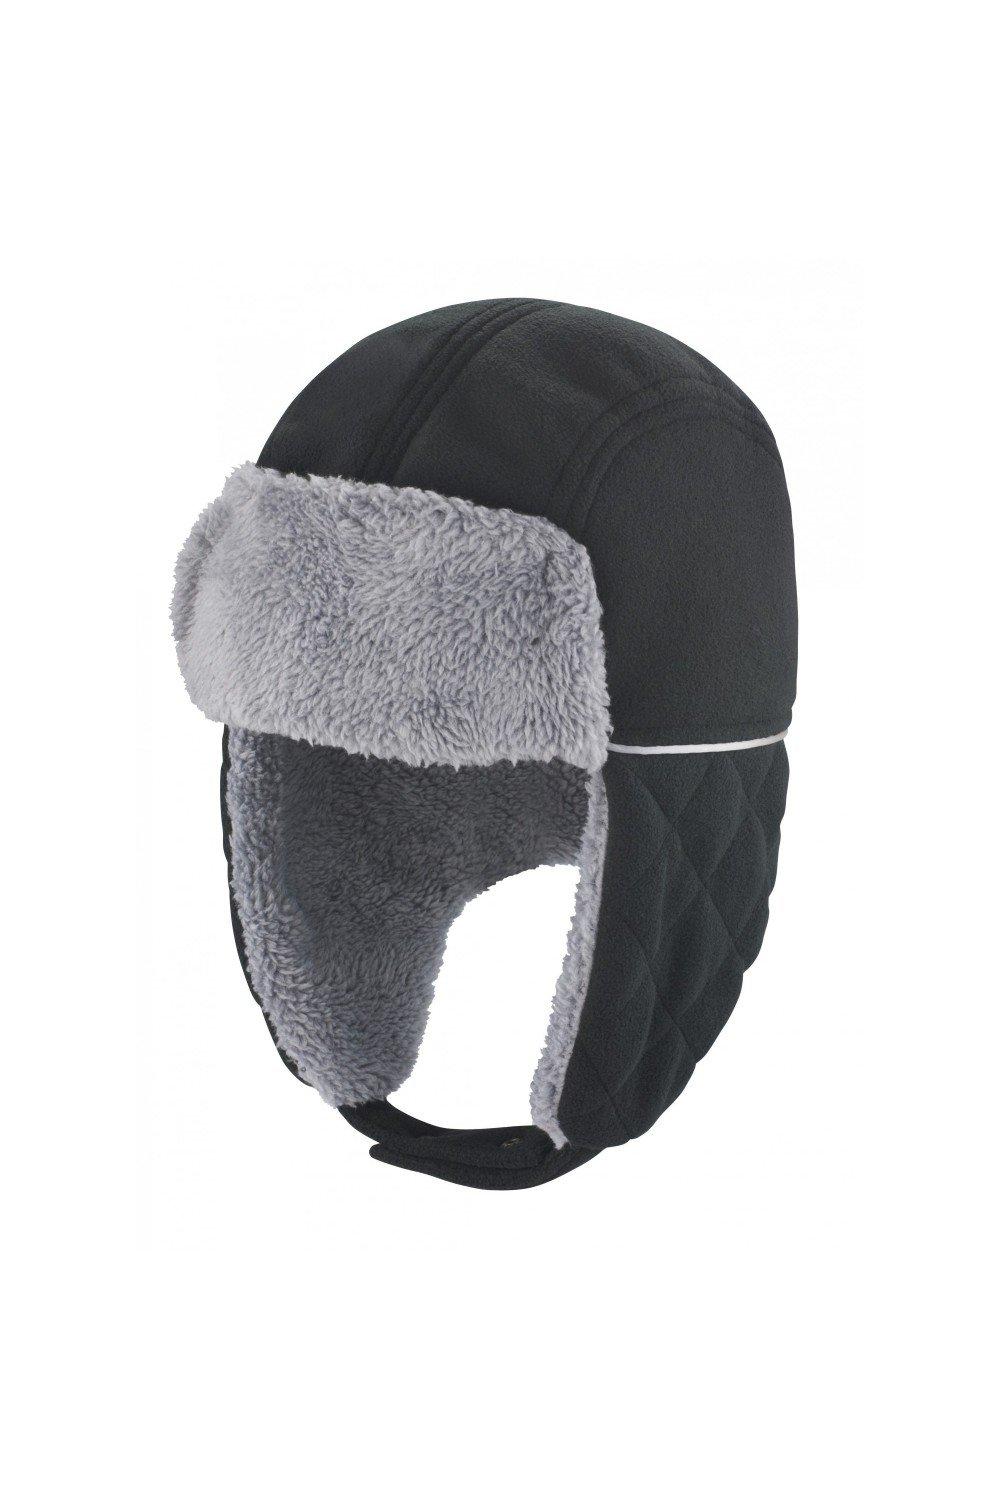 Result Winter Essentials Ocean Trapper Hat|Size: S/M|black